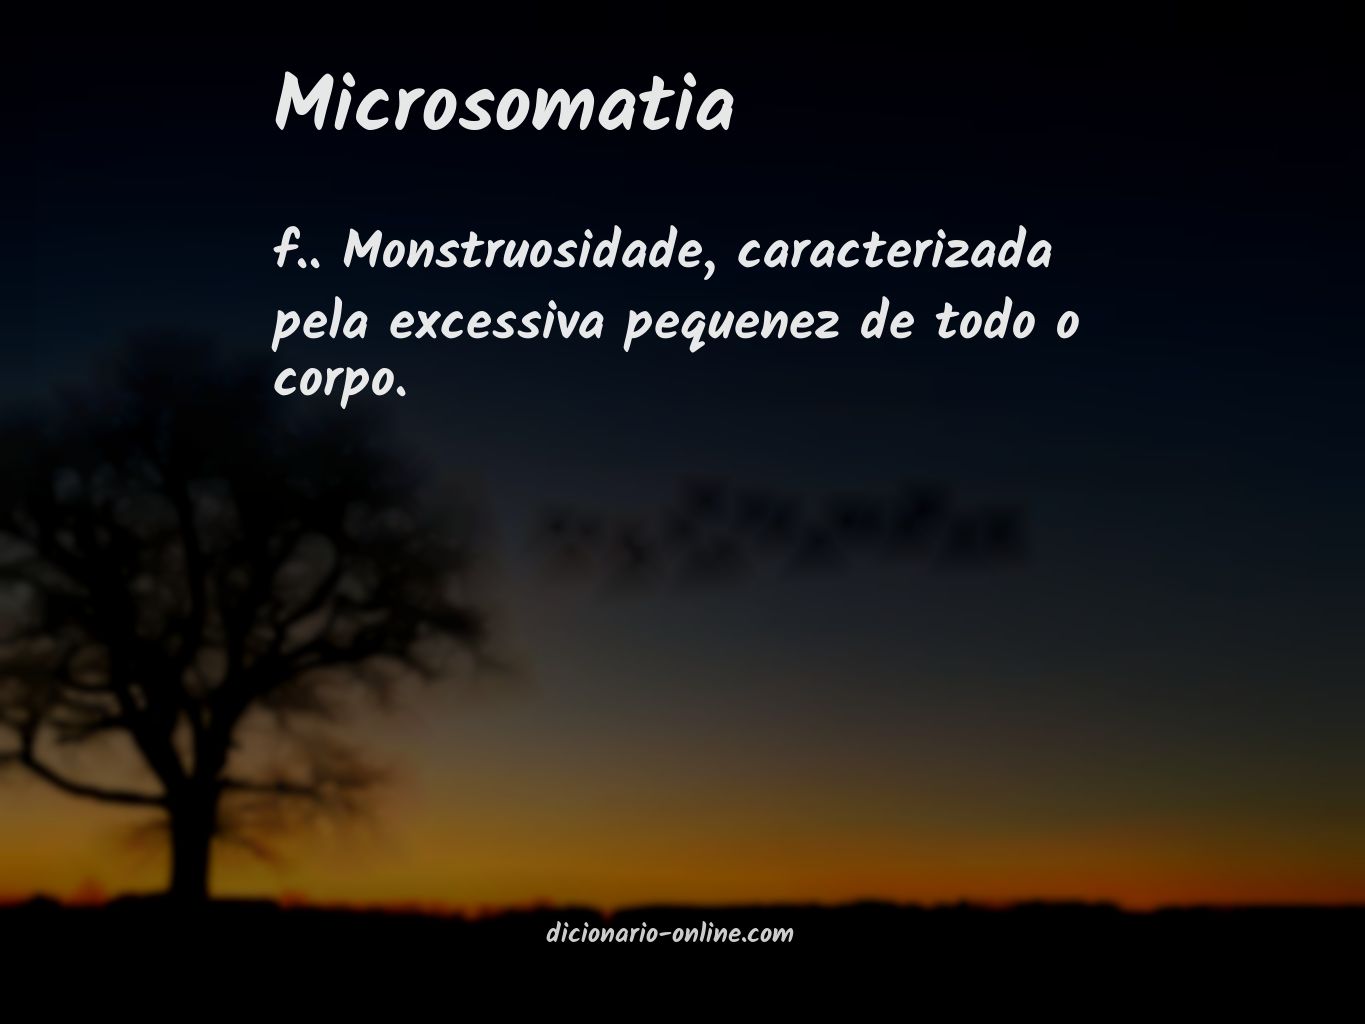 Significado de microsomatia